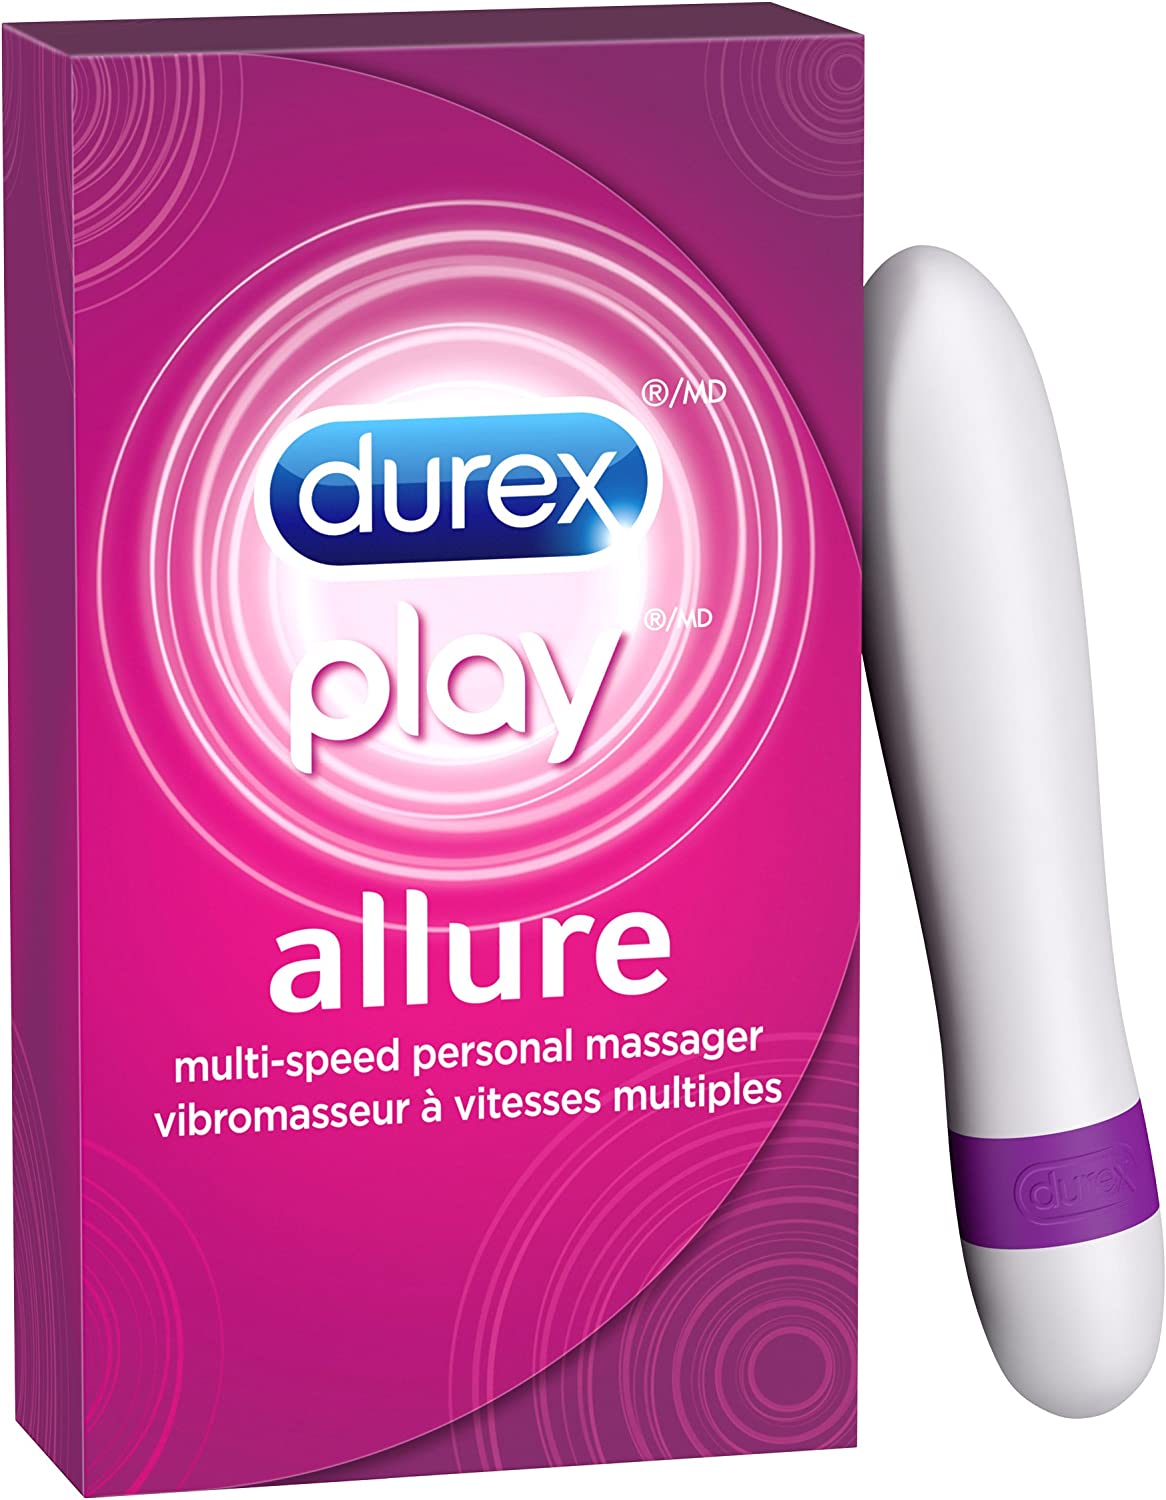 Durex Play Allure Multi-Speed Personal Massager